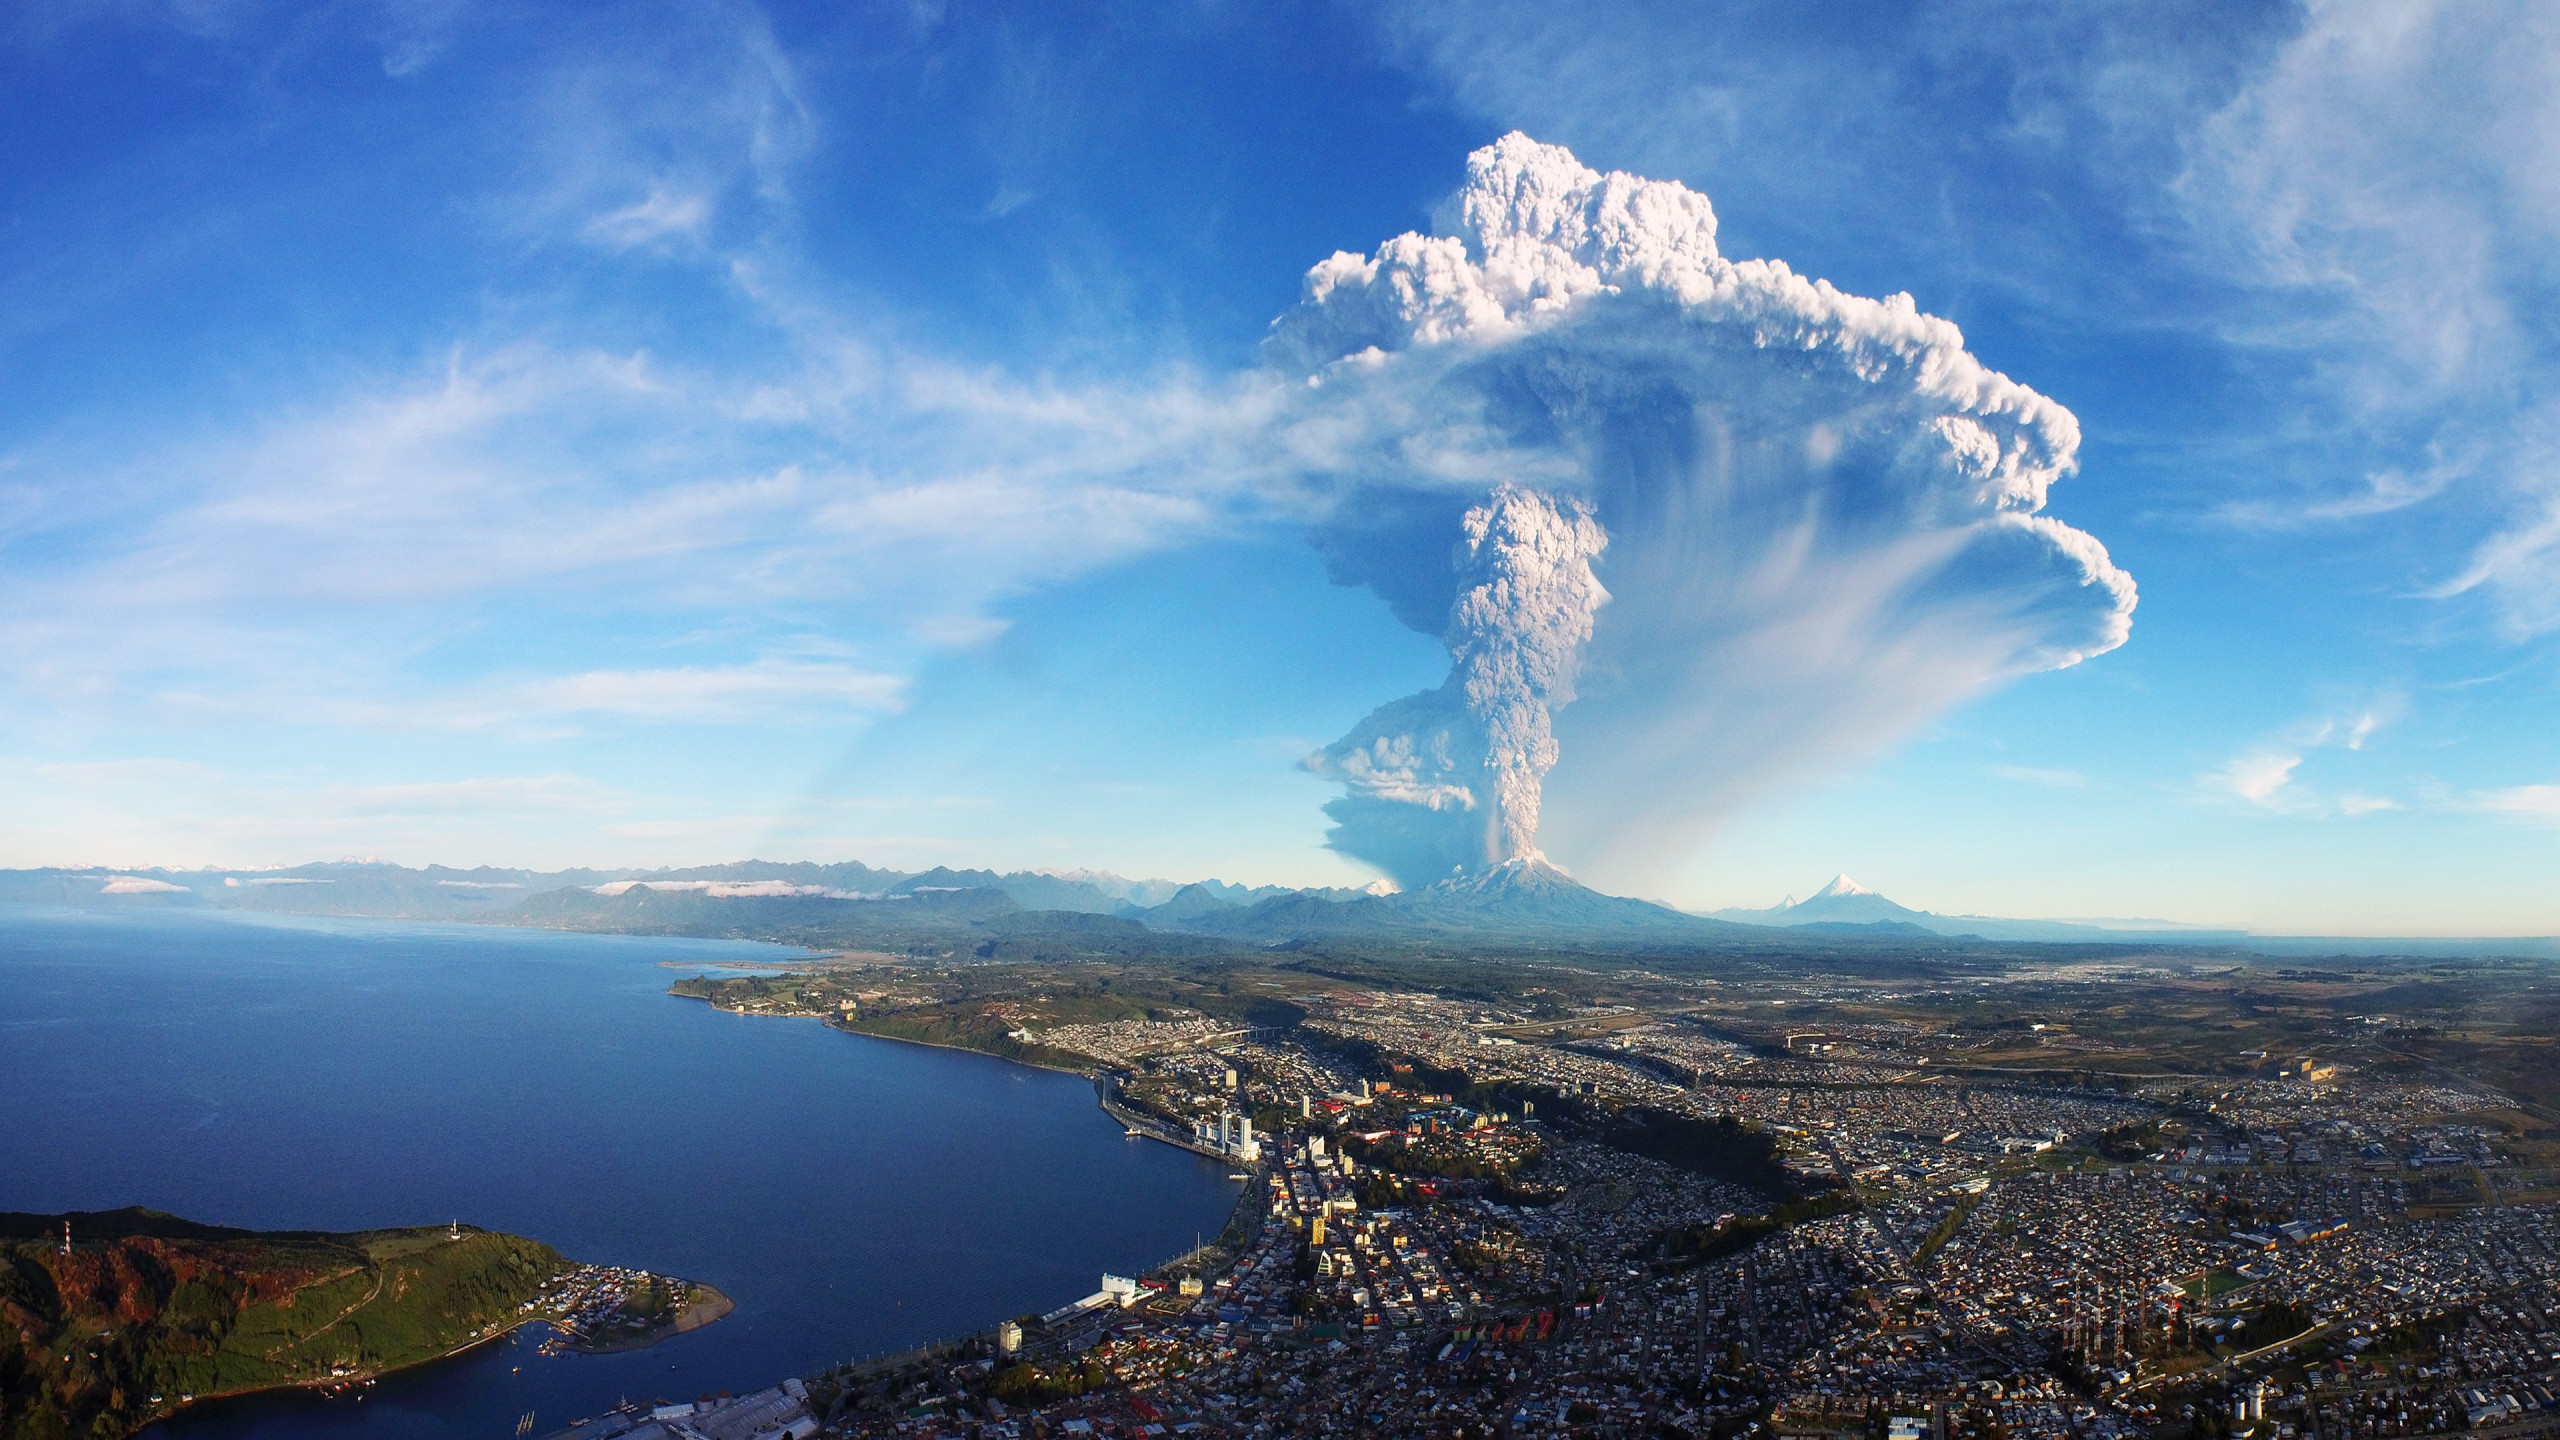 Calbuco volcano in Chile erupts wallpaper 2560x1440